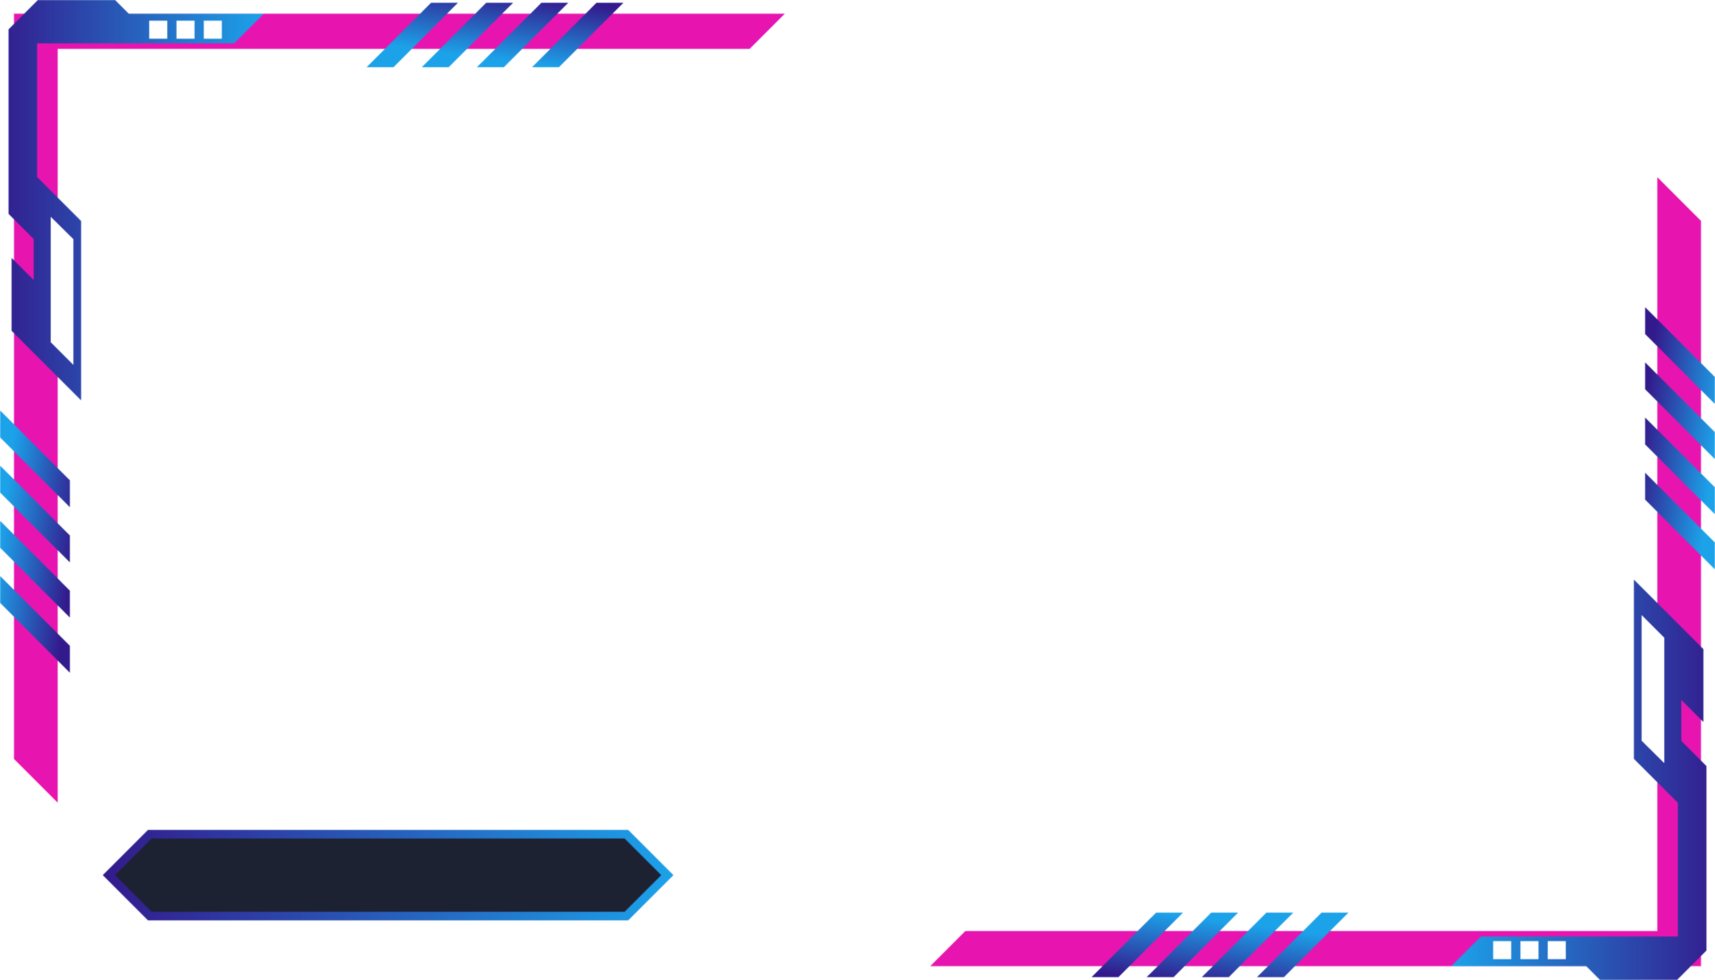 enkel trogen gaming skärm panel png med abstrakt former. uppkopplad spel strömning täcka över och användare gränssnitt design med rosa och blå färger. metallisk gaming täcka över panel bild.